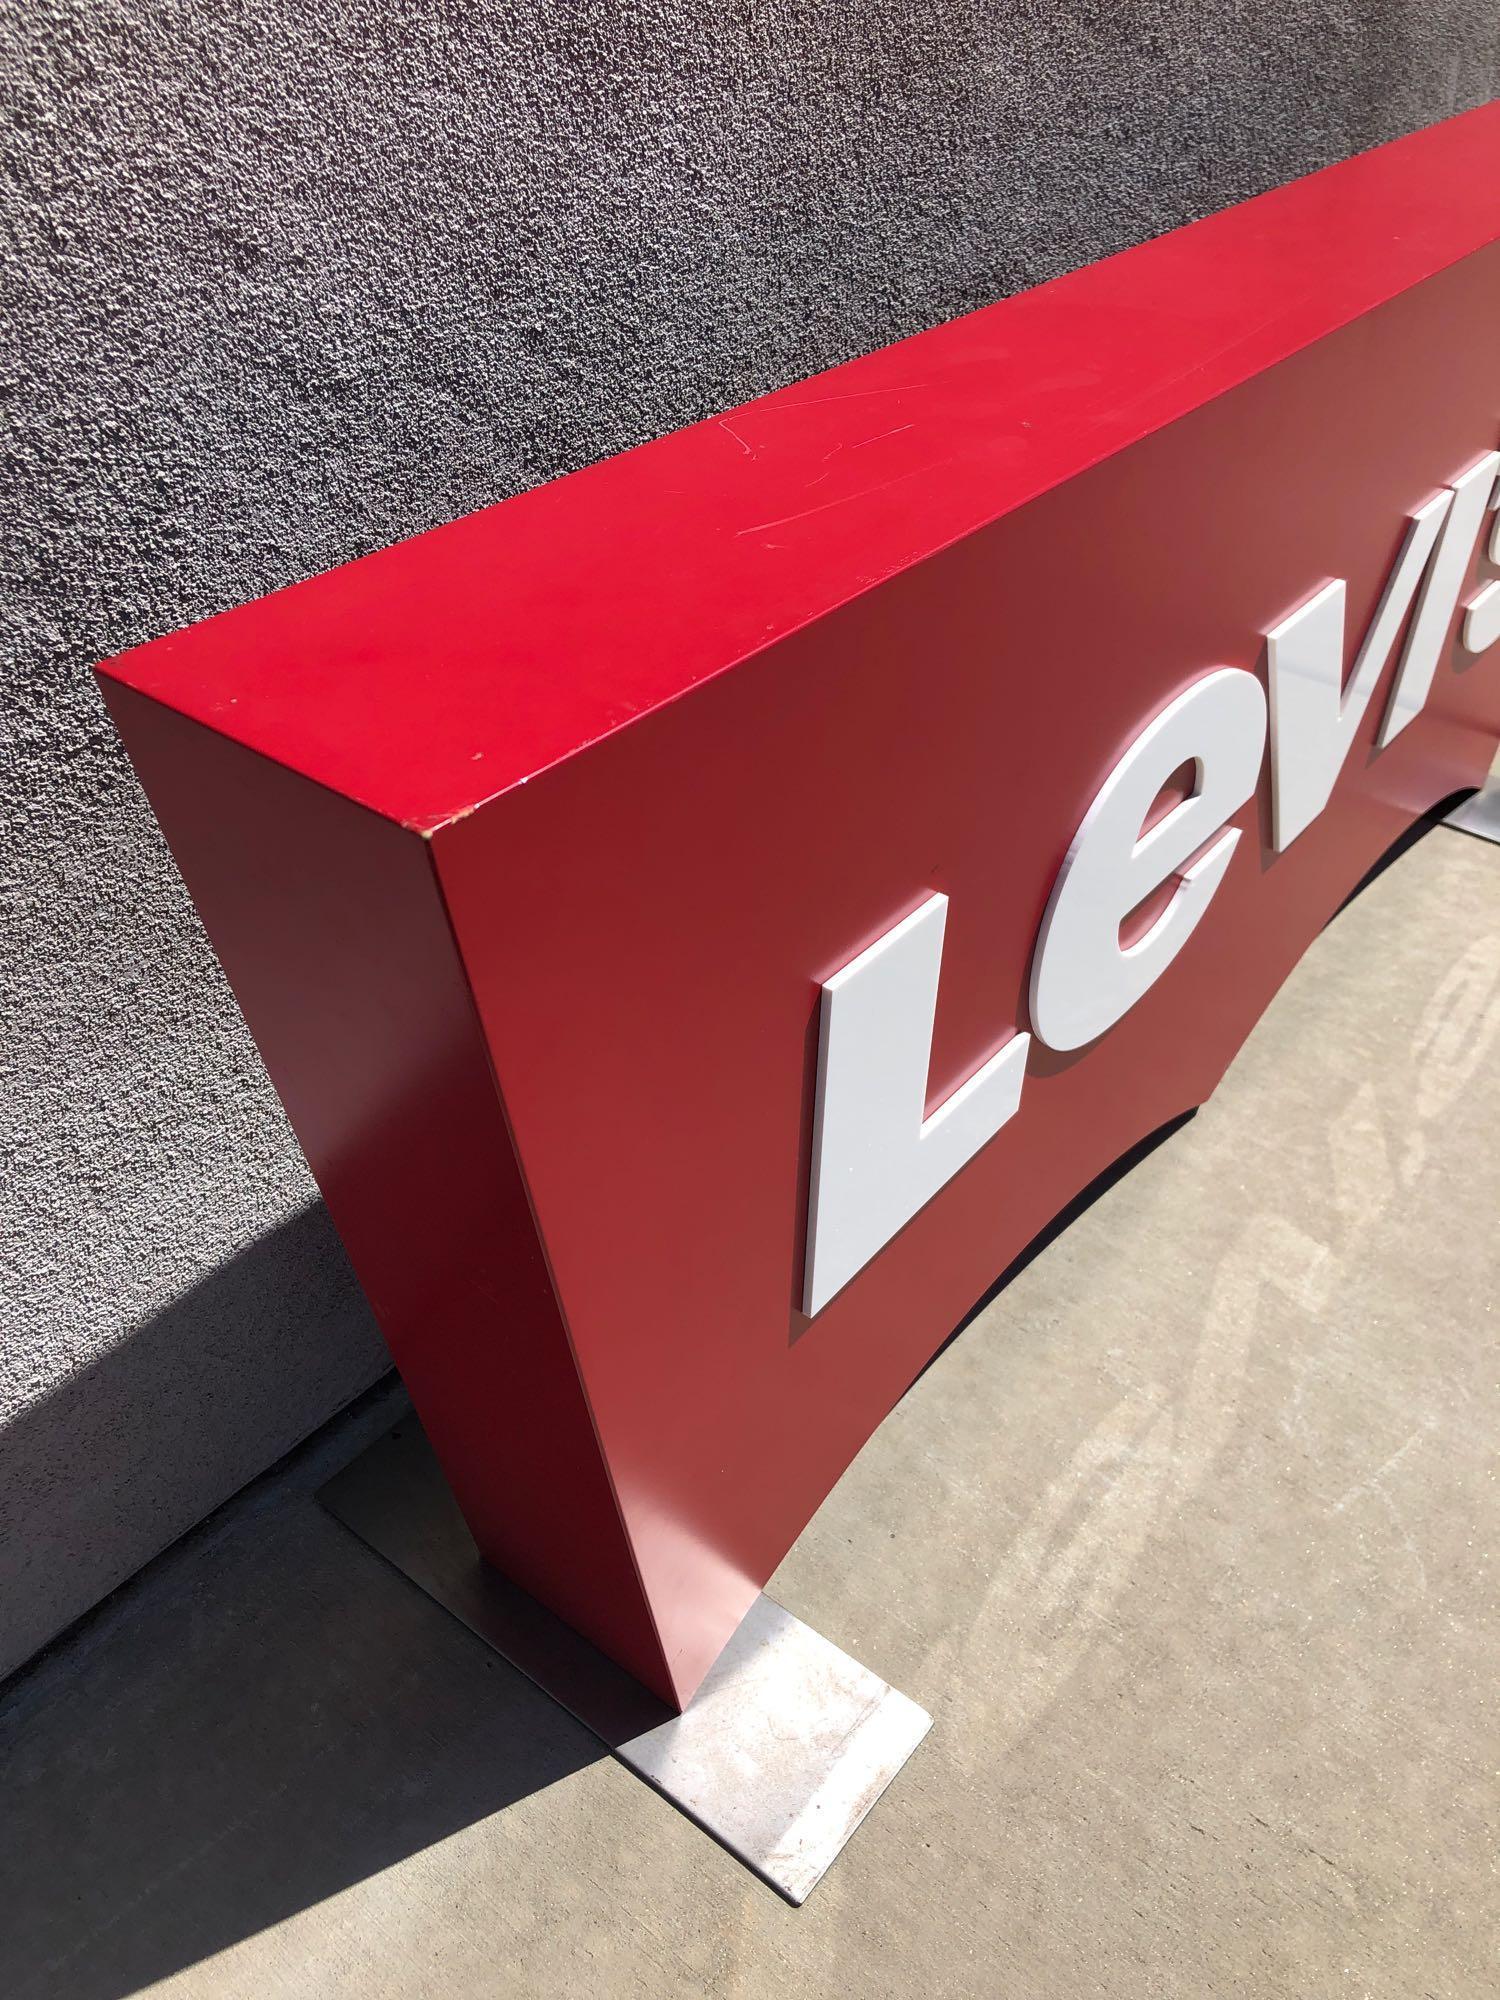 Large Levis Jeans Sign